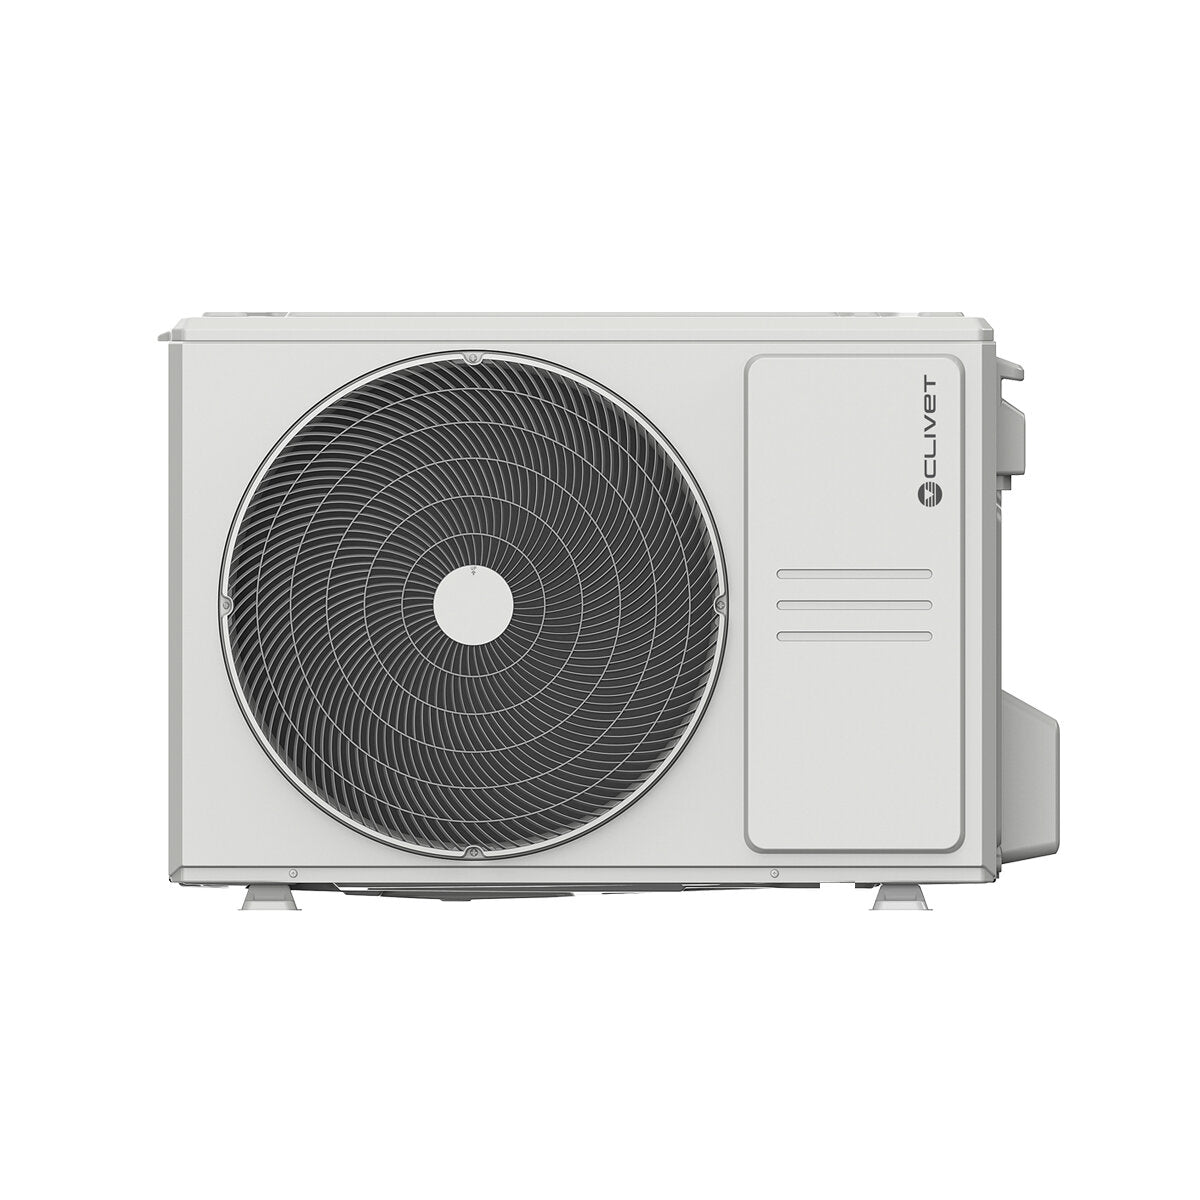 Clivet BOX 2 air conditioner 650x650 4-way dual split cassette 9000+18000 BTU inverter A++ outdoor unit 5.3 kW